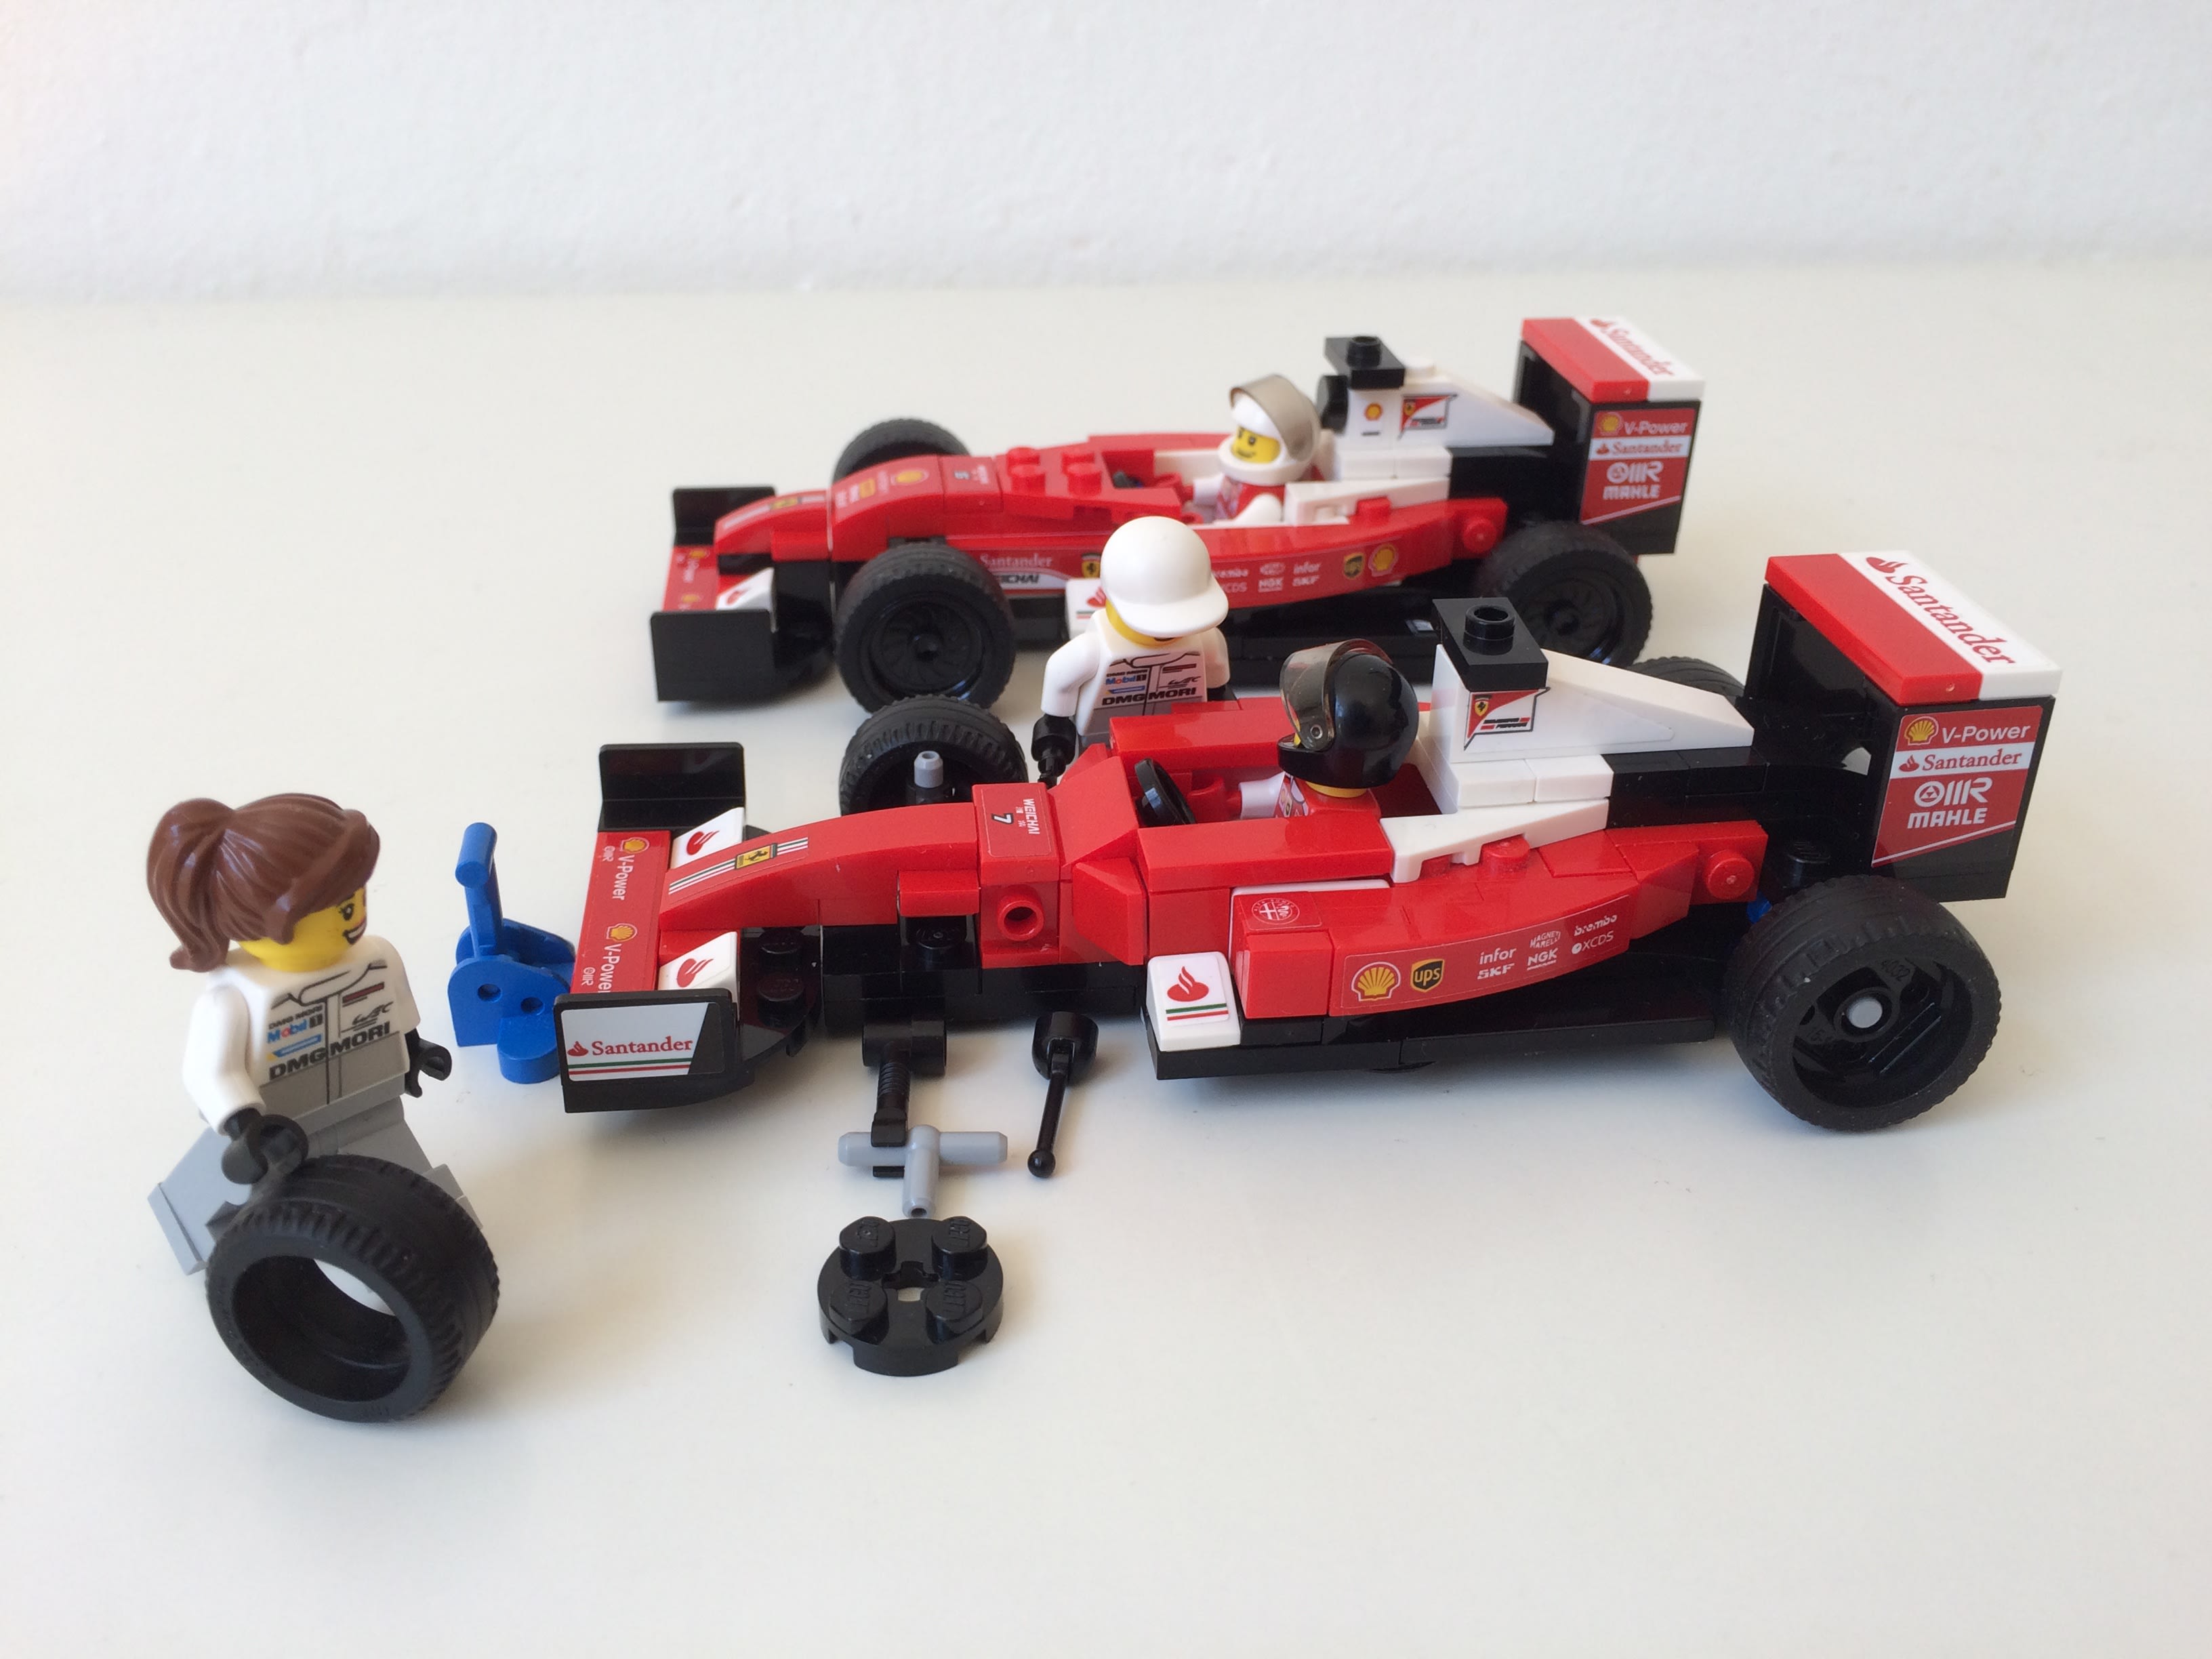 Small LEGO Ferrari F1 sets. Credit - ER0L, Flickr